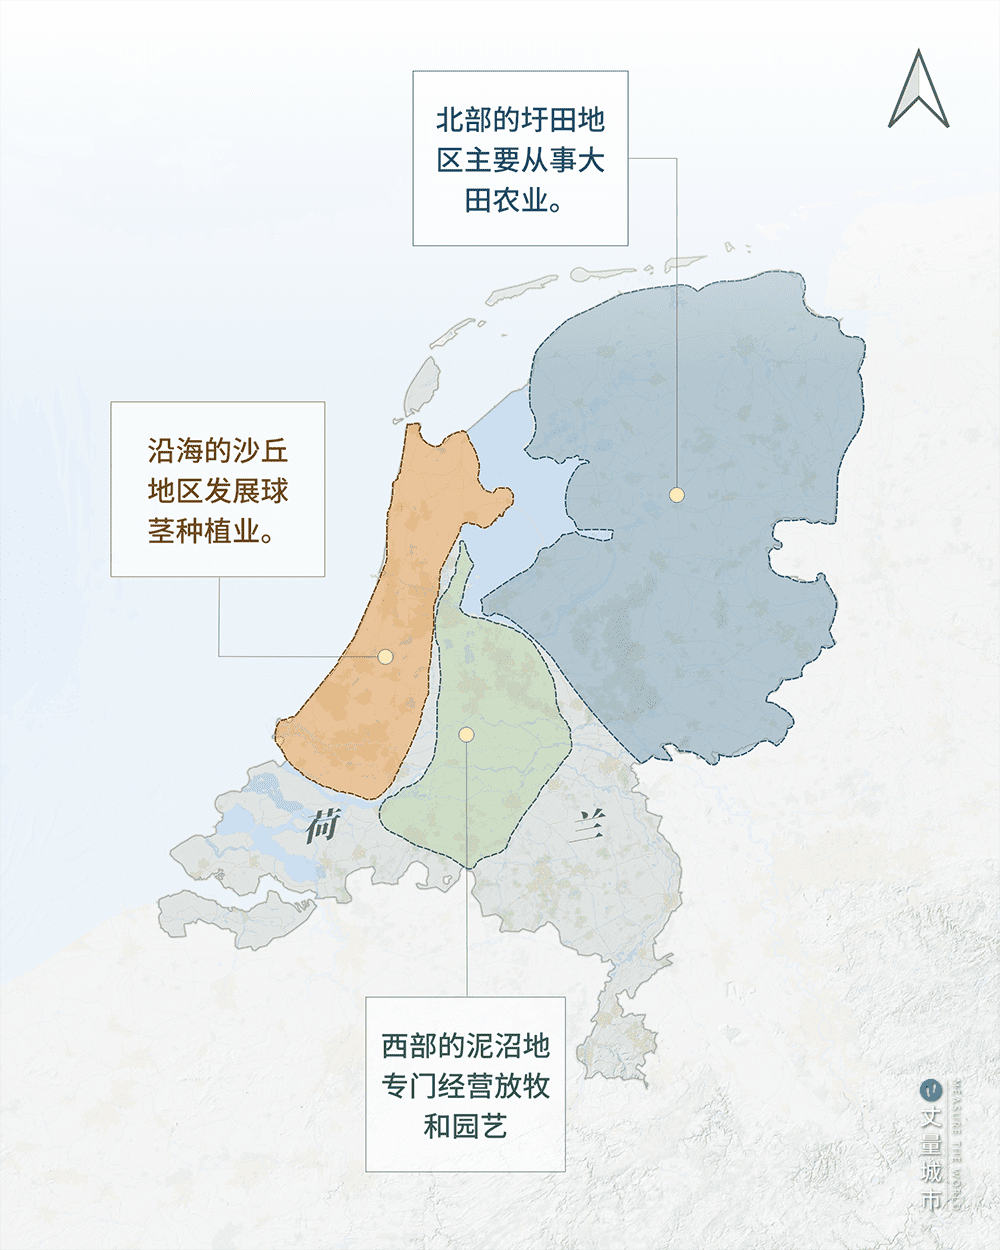 荷兰农业明确的区域分工